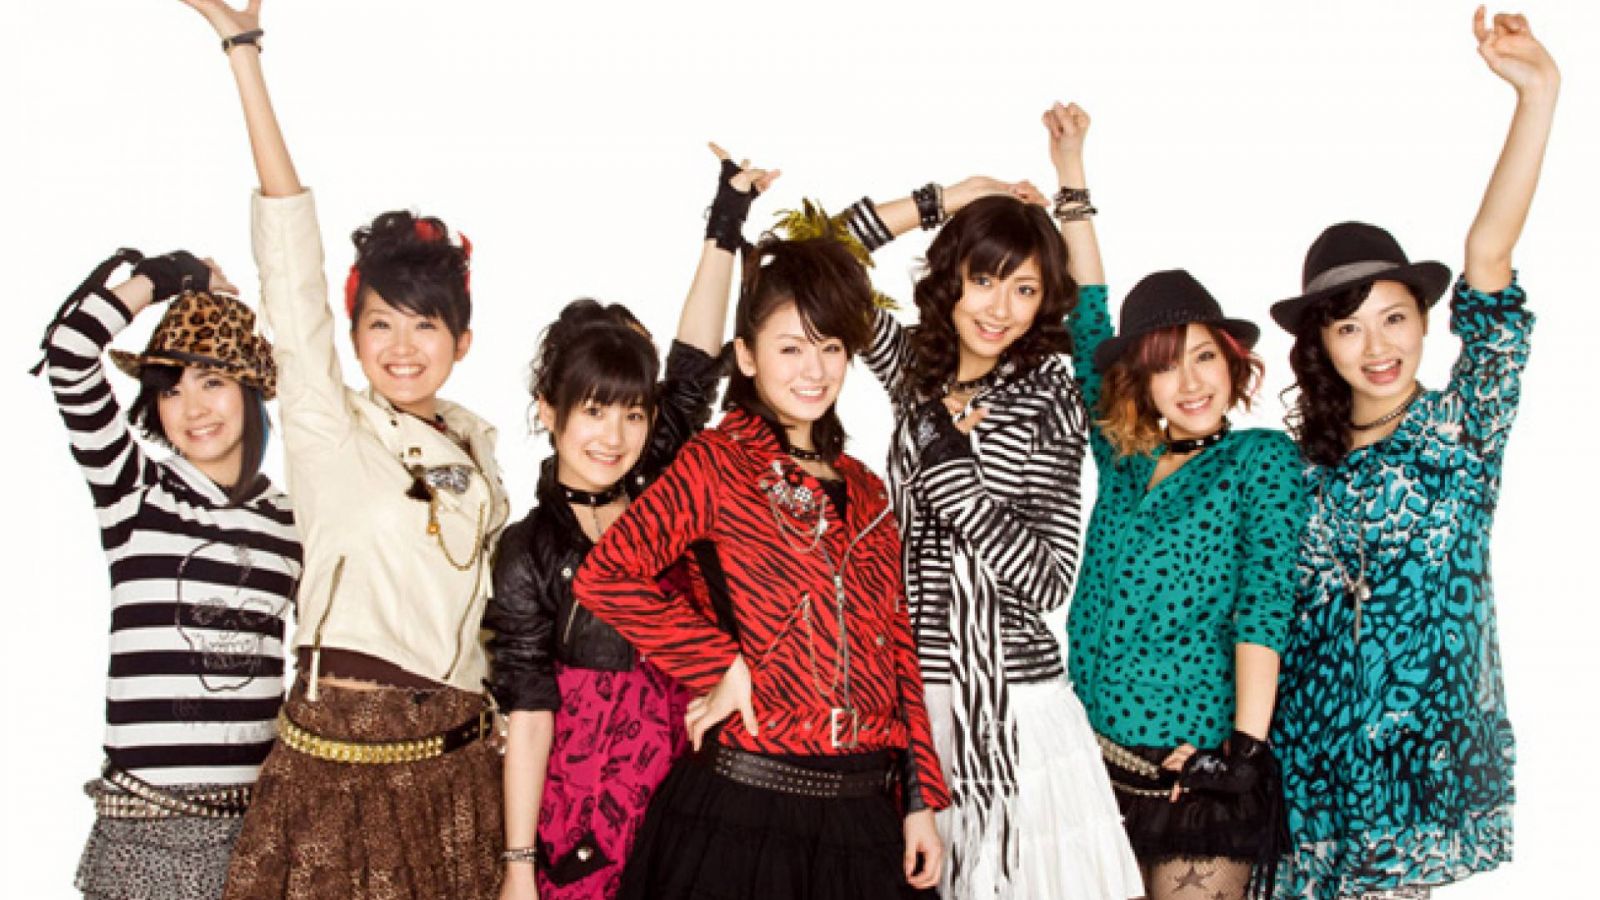 Berryz Koubou lança mais um single como tema de "Inazuma Eleven" © JapanFiles.com / Up Front Agency